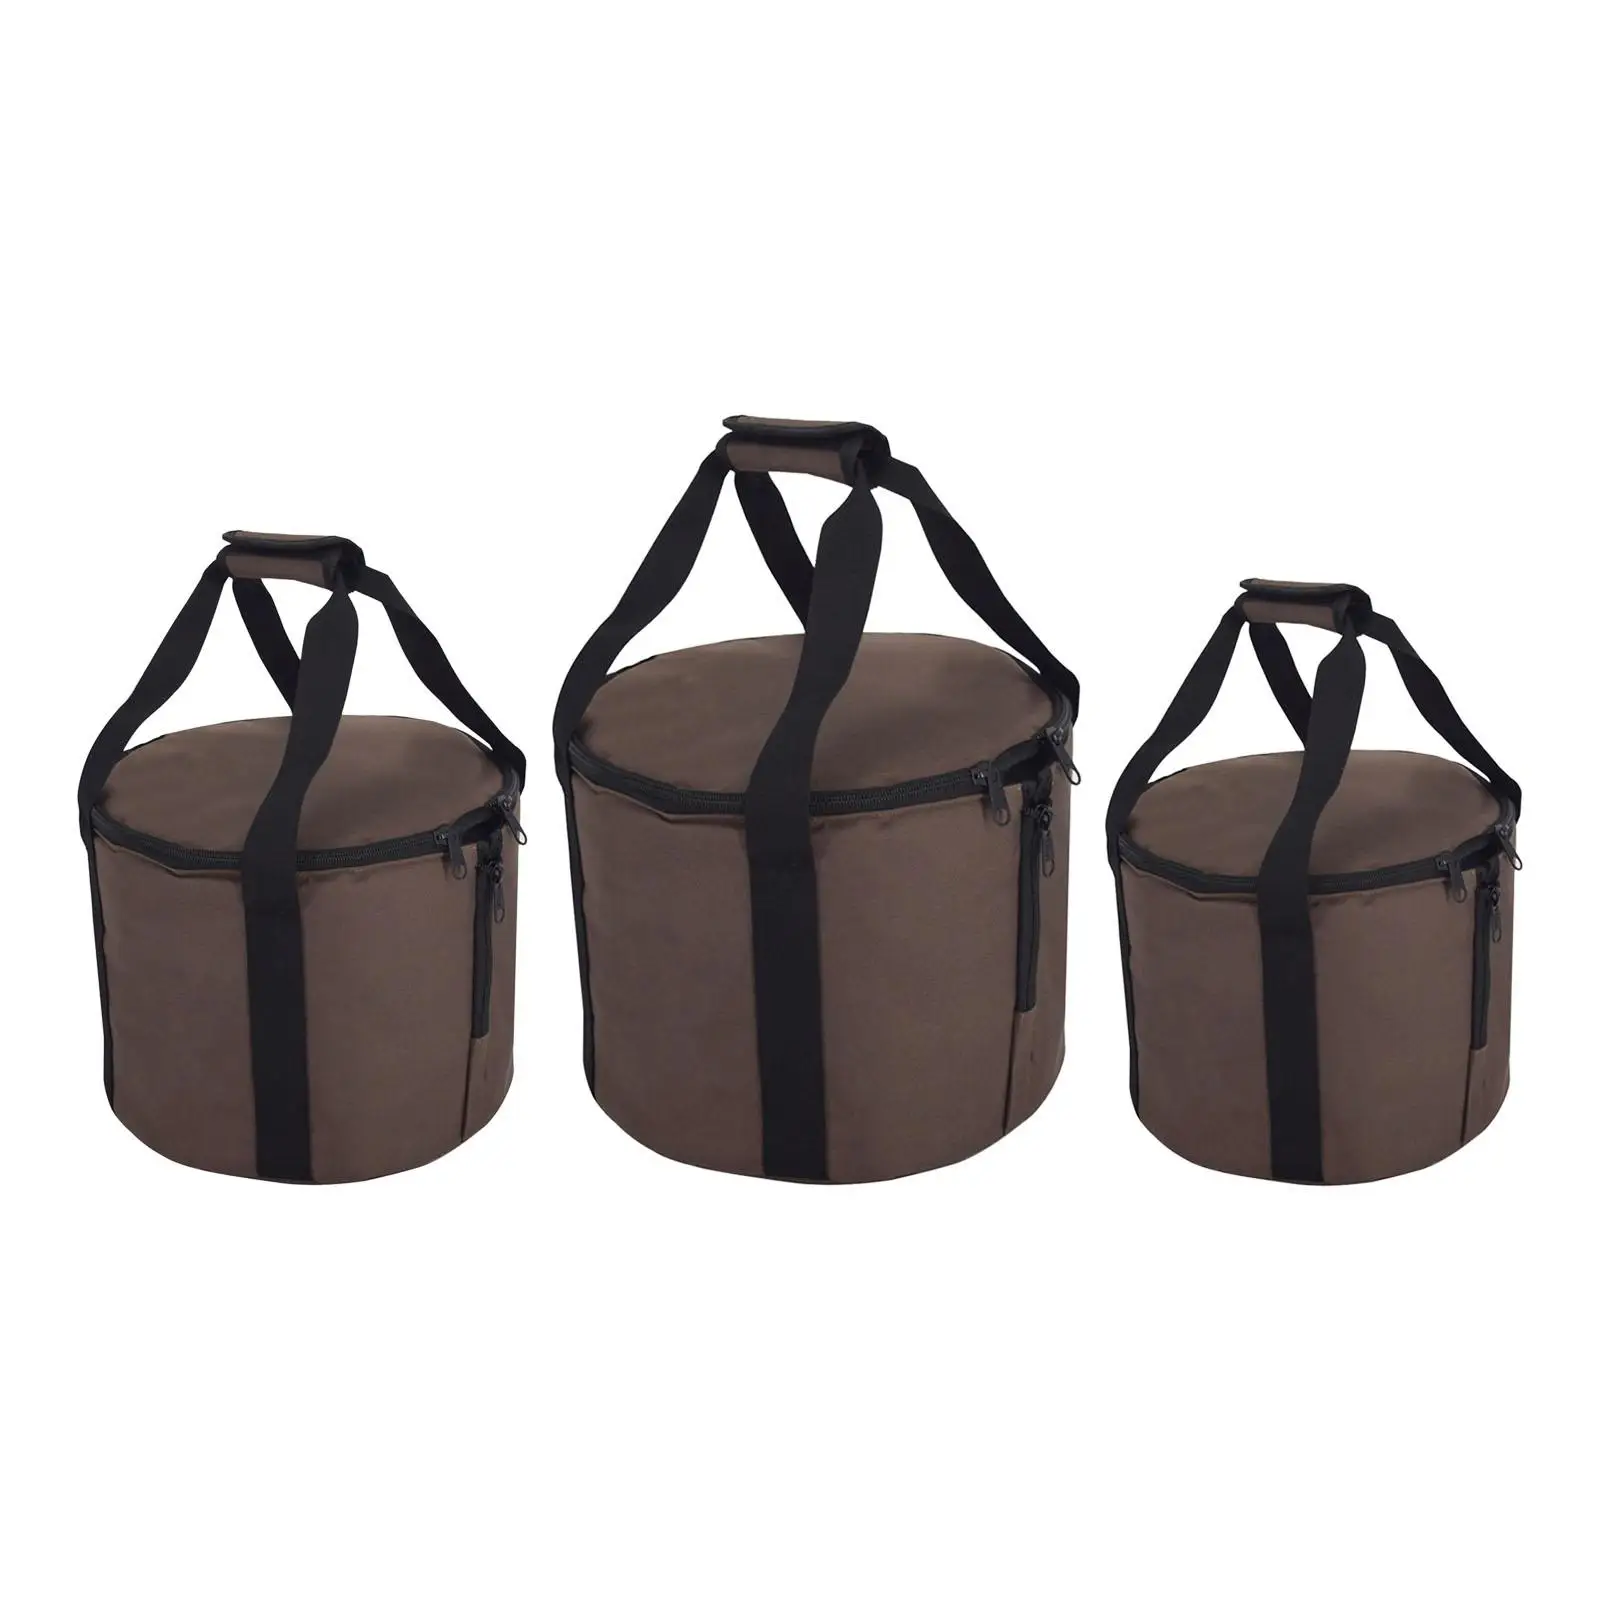 Slow Cooker Bag Soup Pot Handbag Pot Organizer with Top Handle Carrying Bag